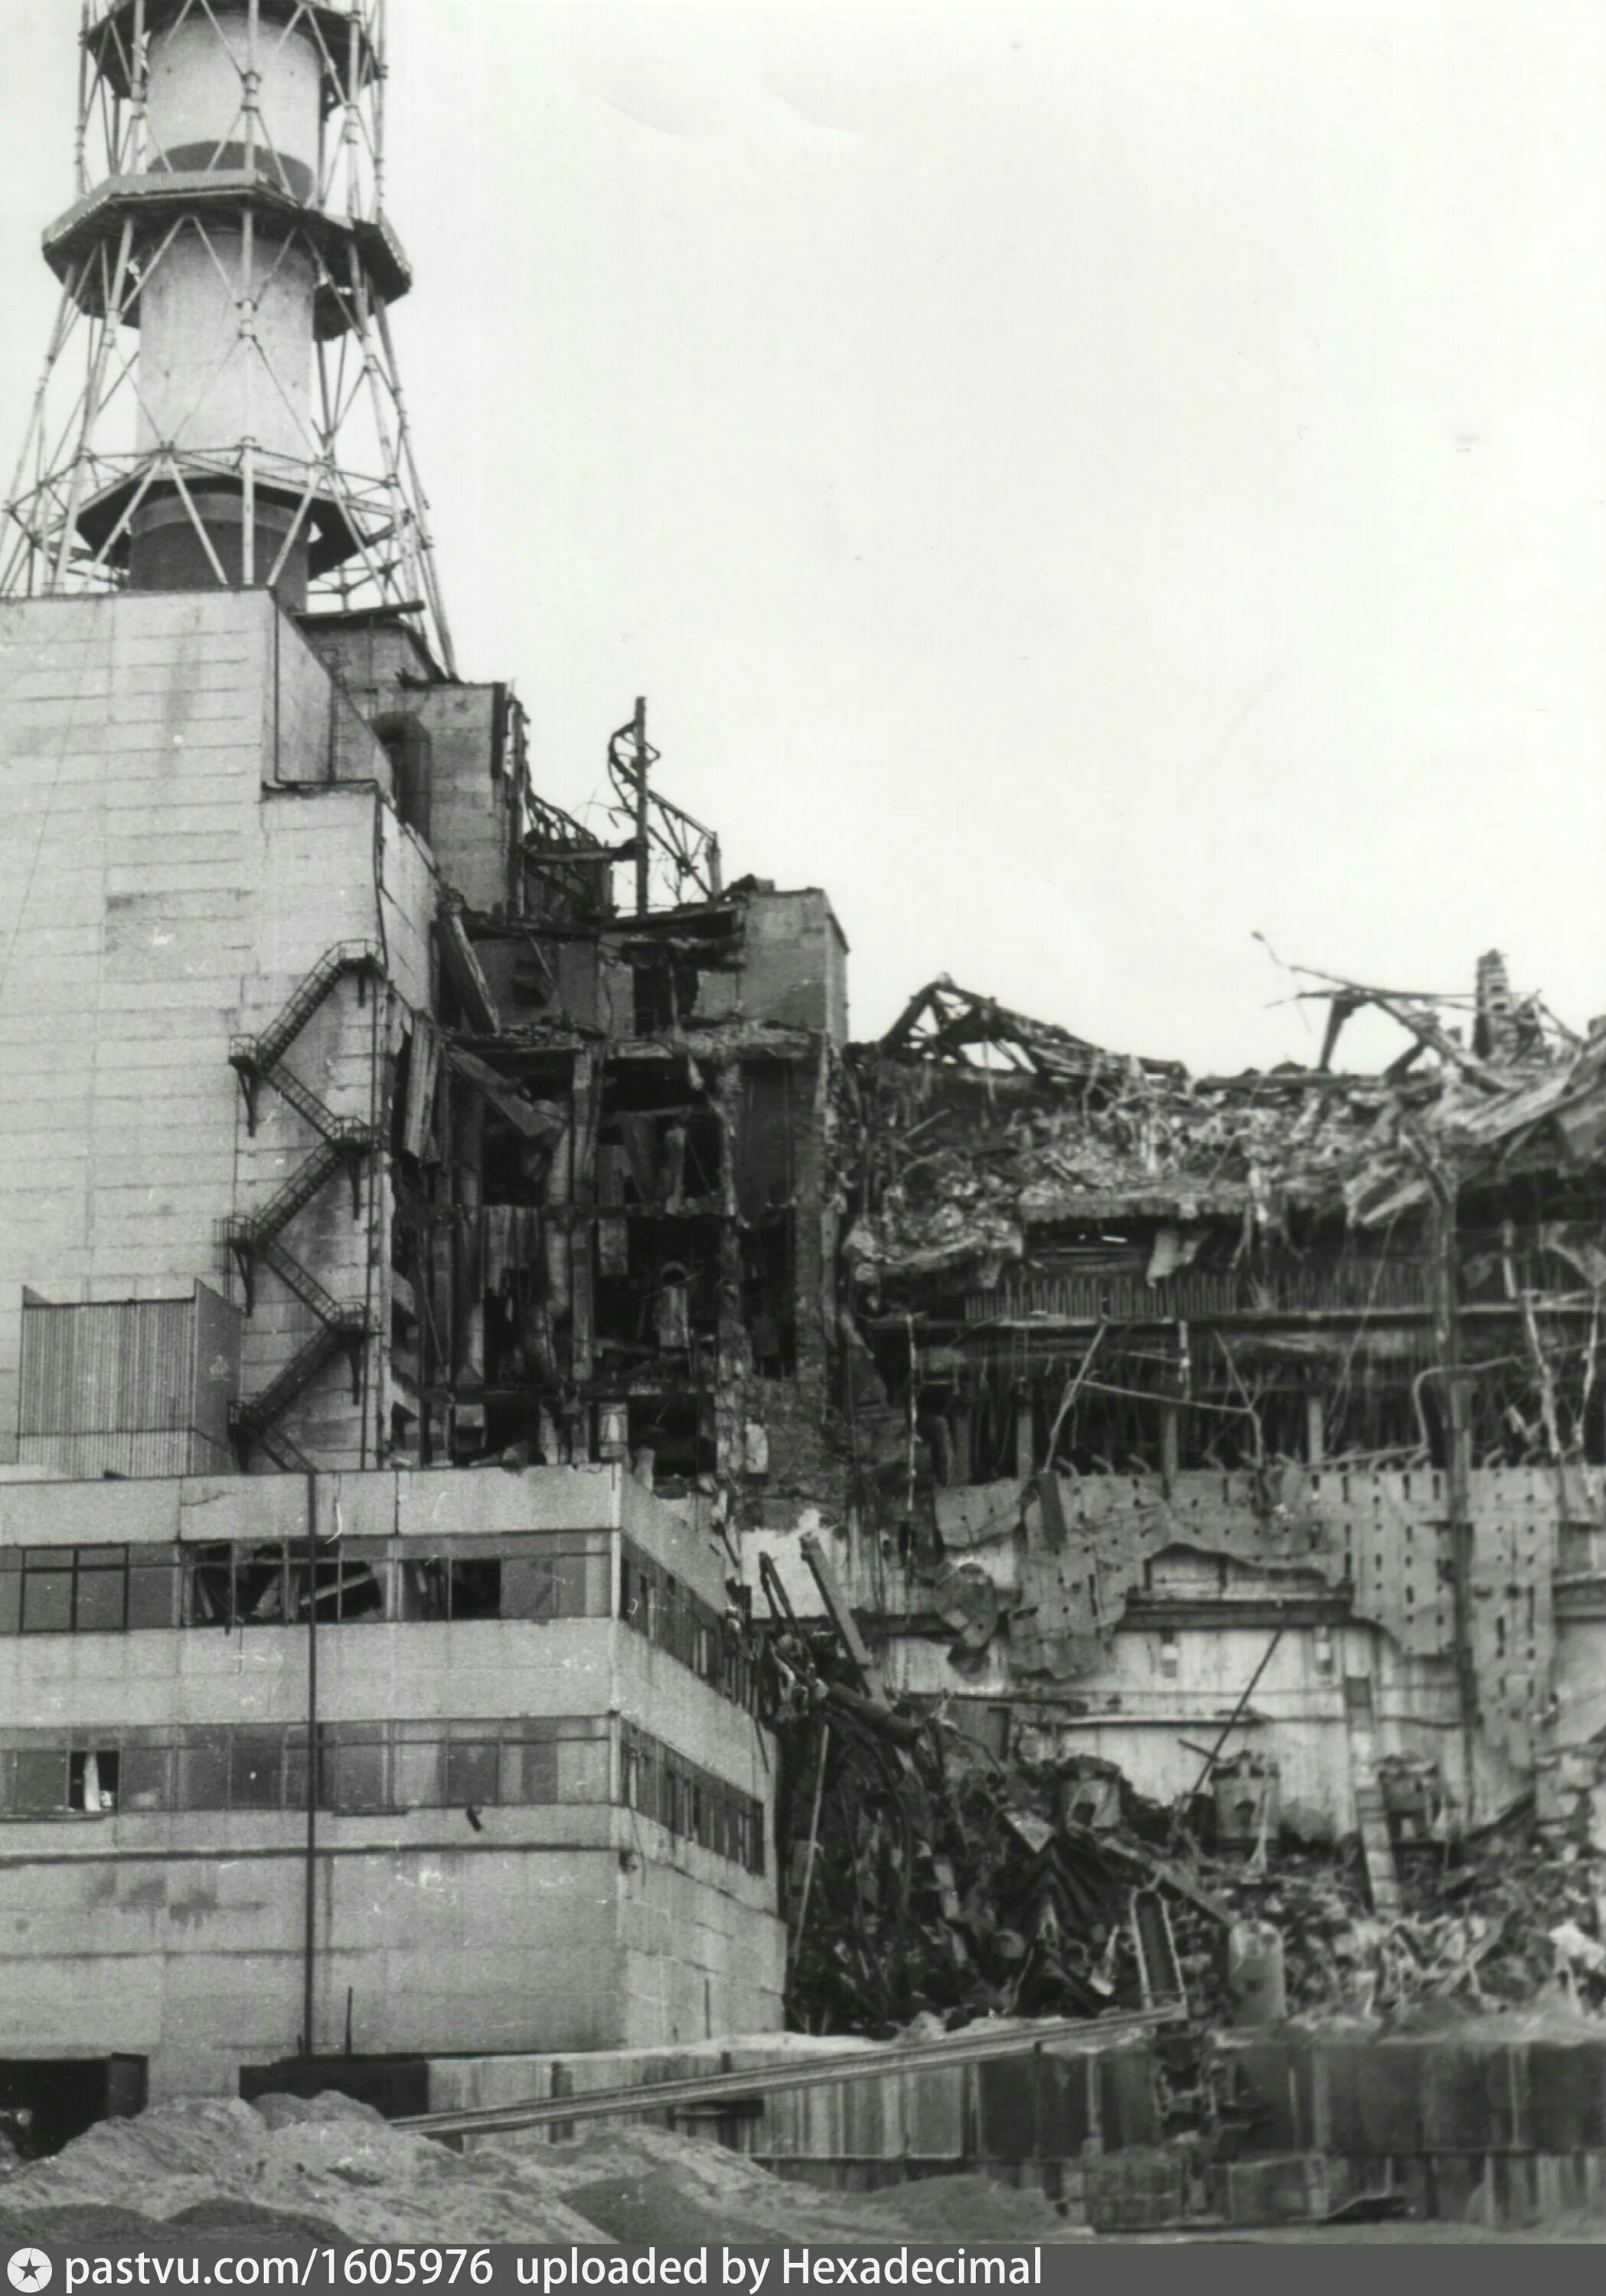 26 апреля чернобыль. Чернобыльская АЭС 1986. 4 Энергоблок ЧАЭС. Разрушенный 4 энергоблок ЧАЭС. 26 Апреля Чернобыльская катастрофа.